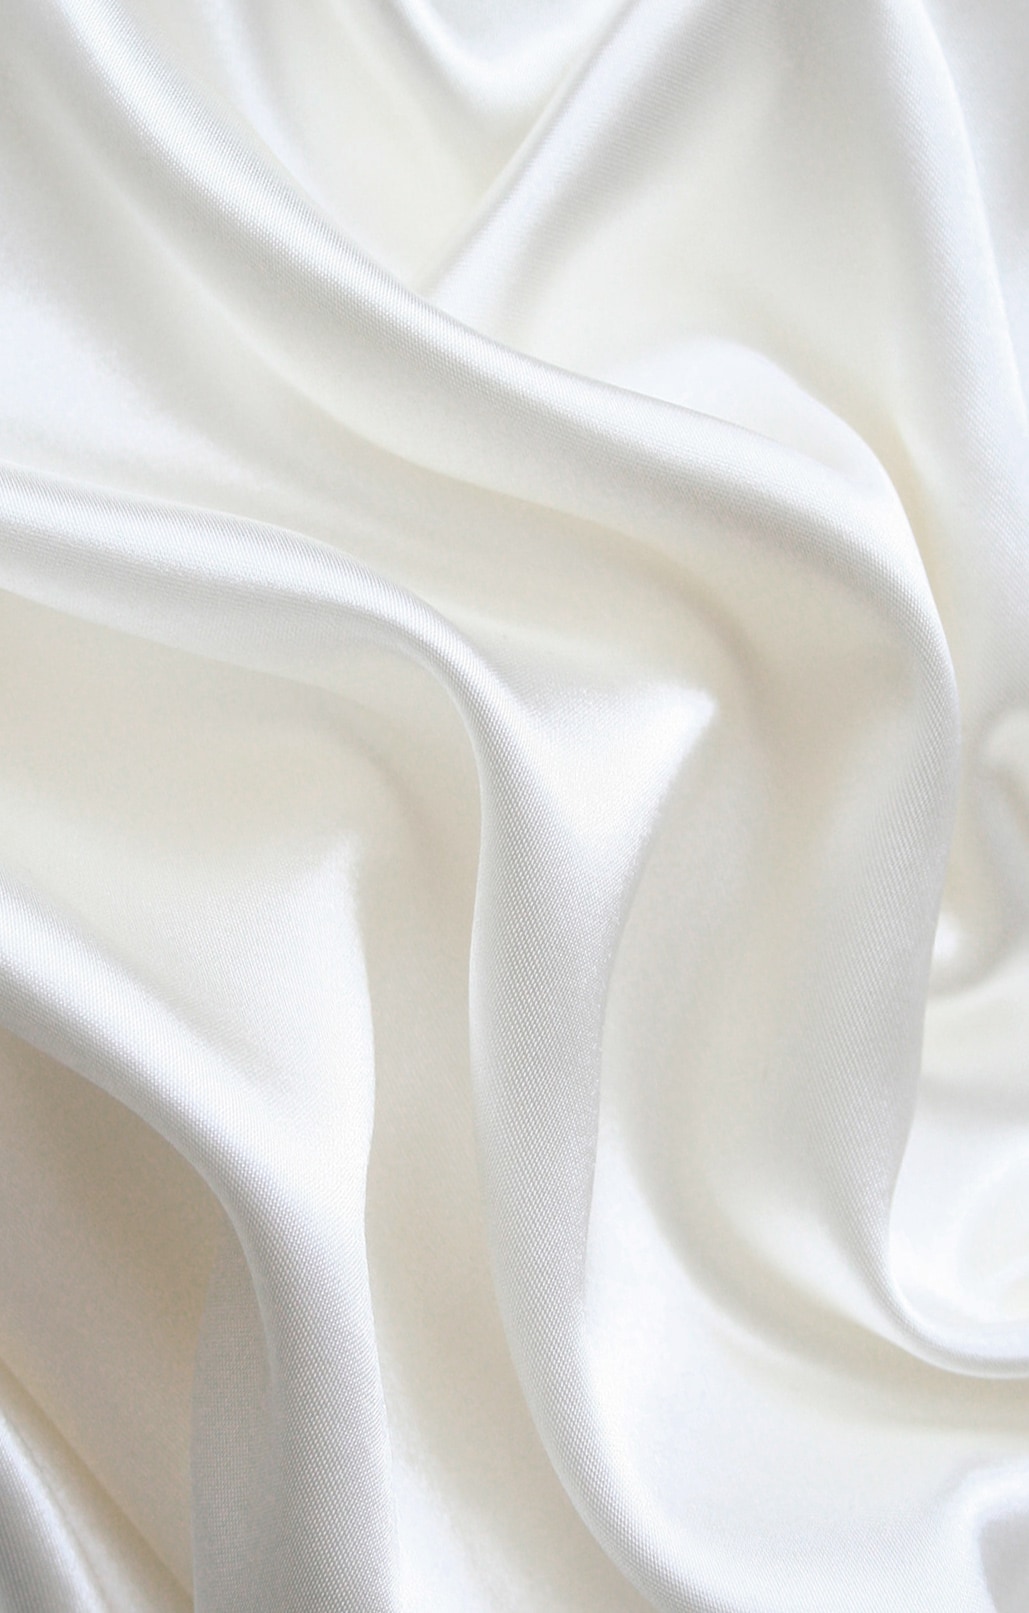 Silk undersheets, white